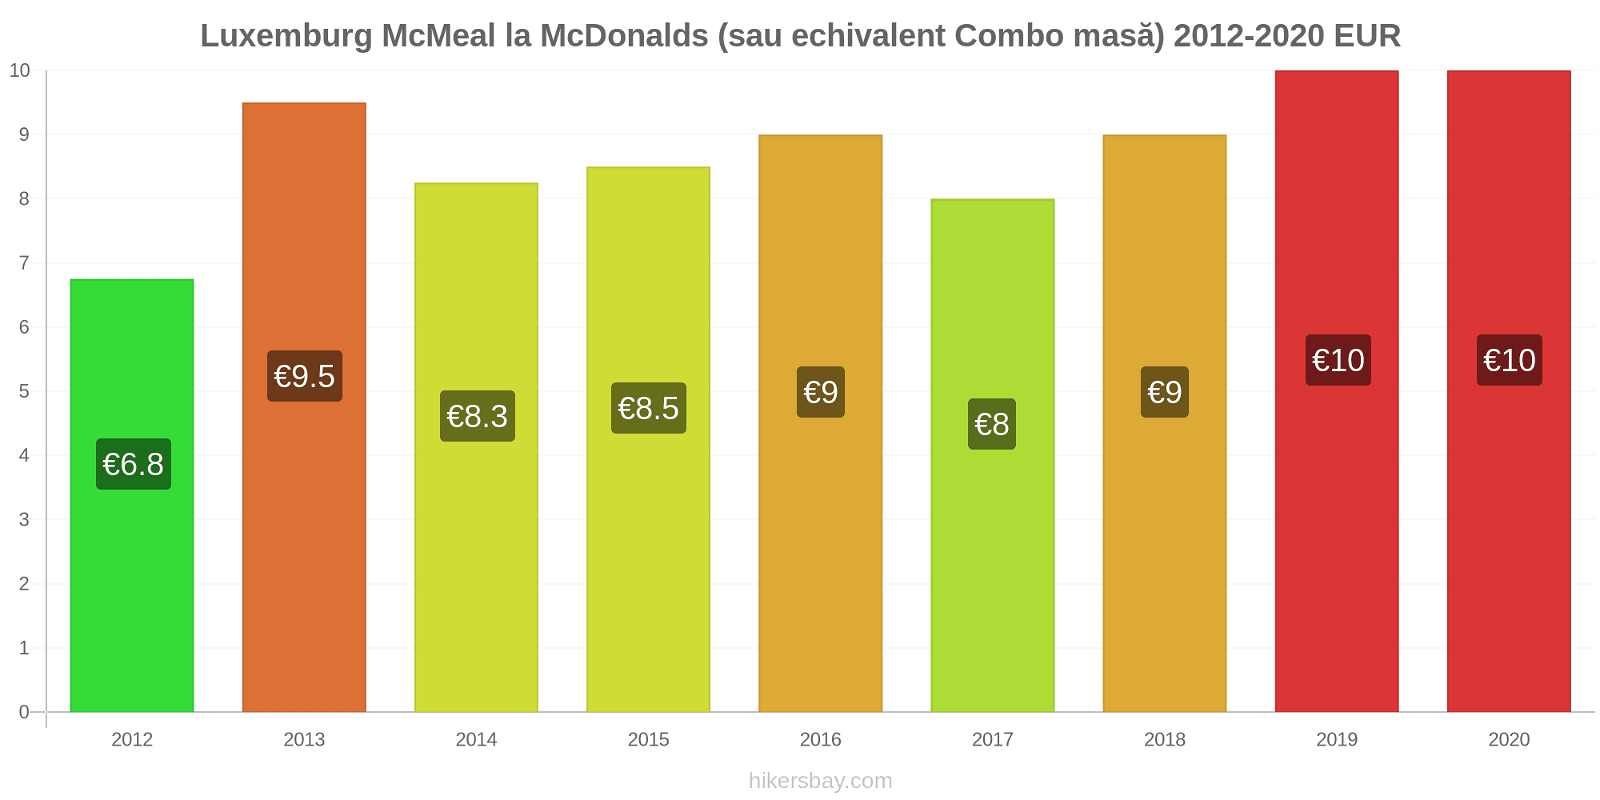 Luxemburg modificări de preț McMeal la McDonalds (sau echivalent Combo masă) hikersbay.com